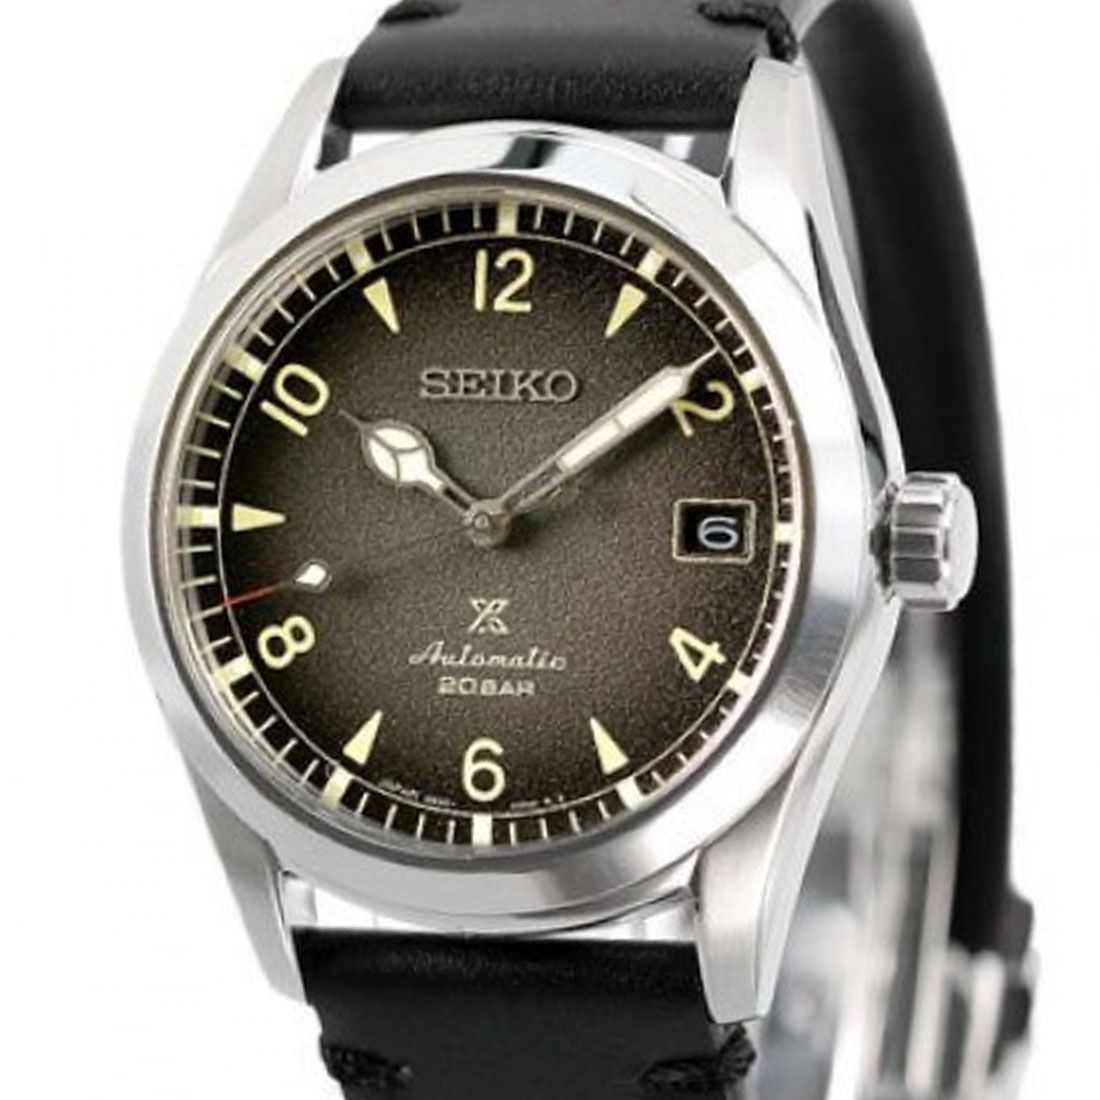 Seiko Prospex Alpinist Black Dial Leather JDM Watch SBDC119 -Seiko